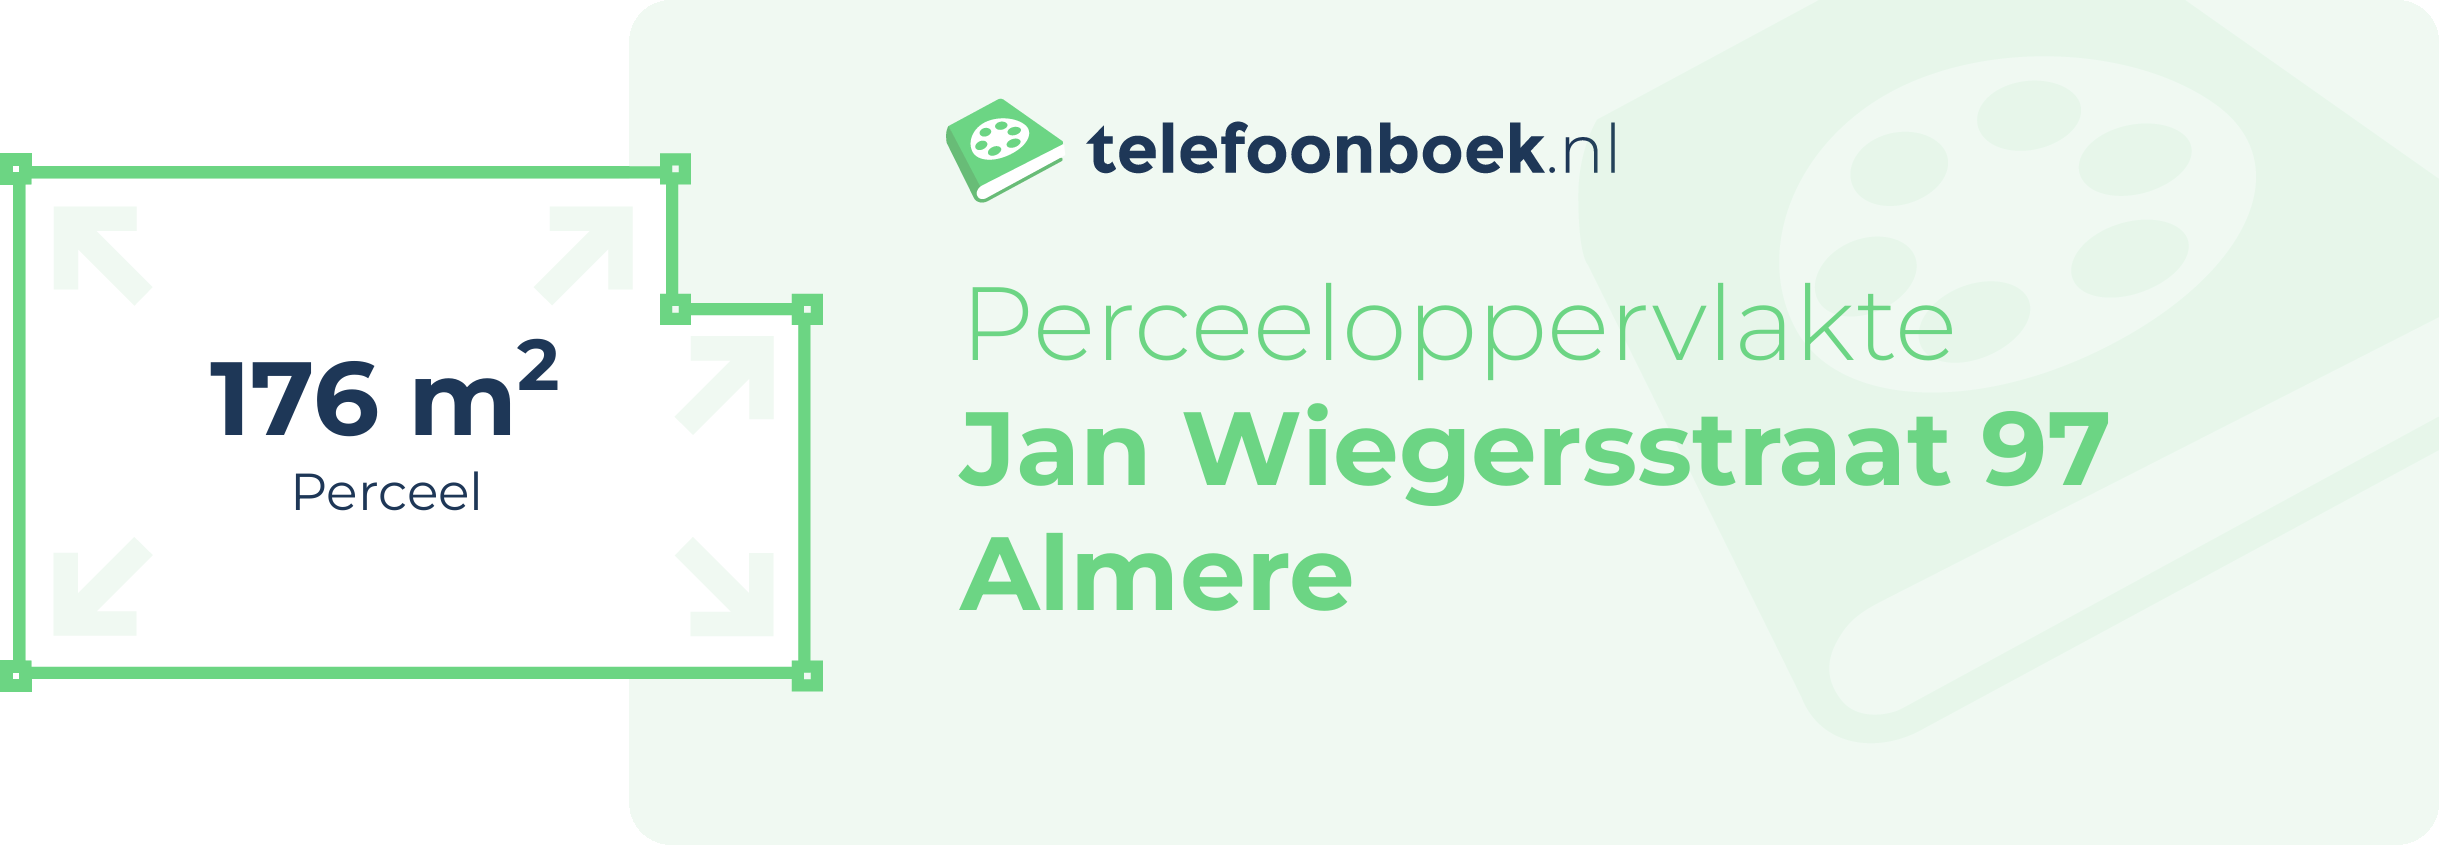 Perceeloppervlakte Jan Wiegersstraat 97 Almere